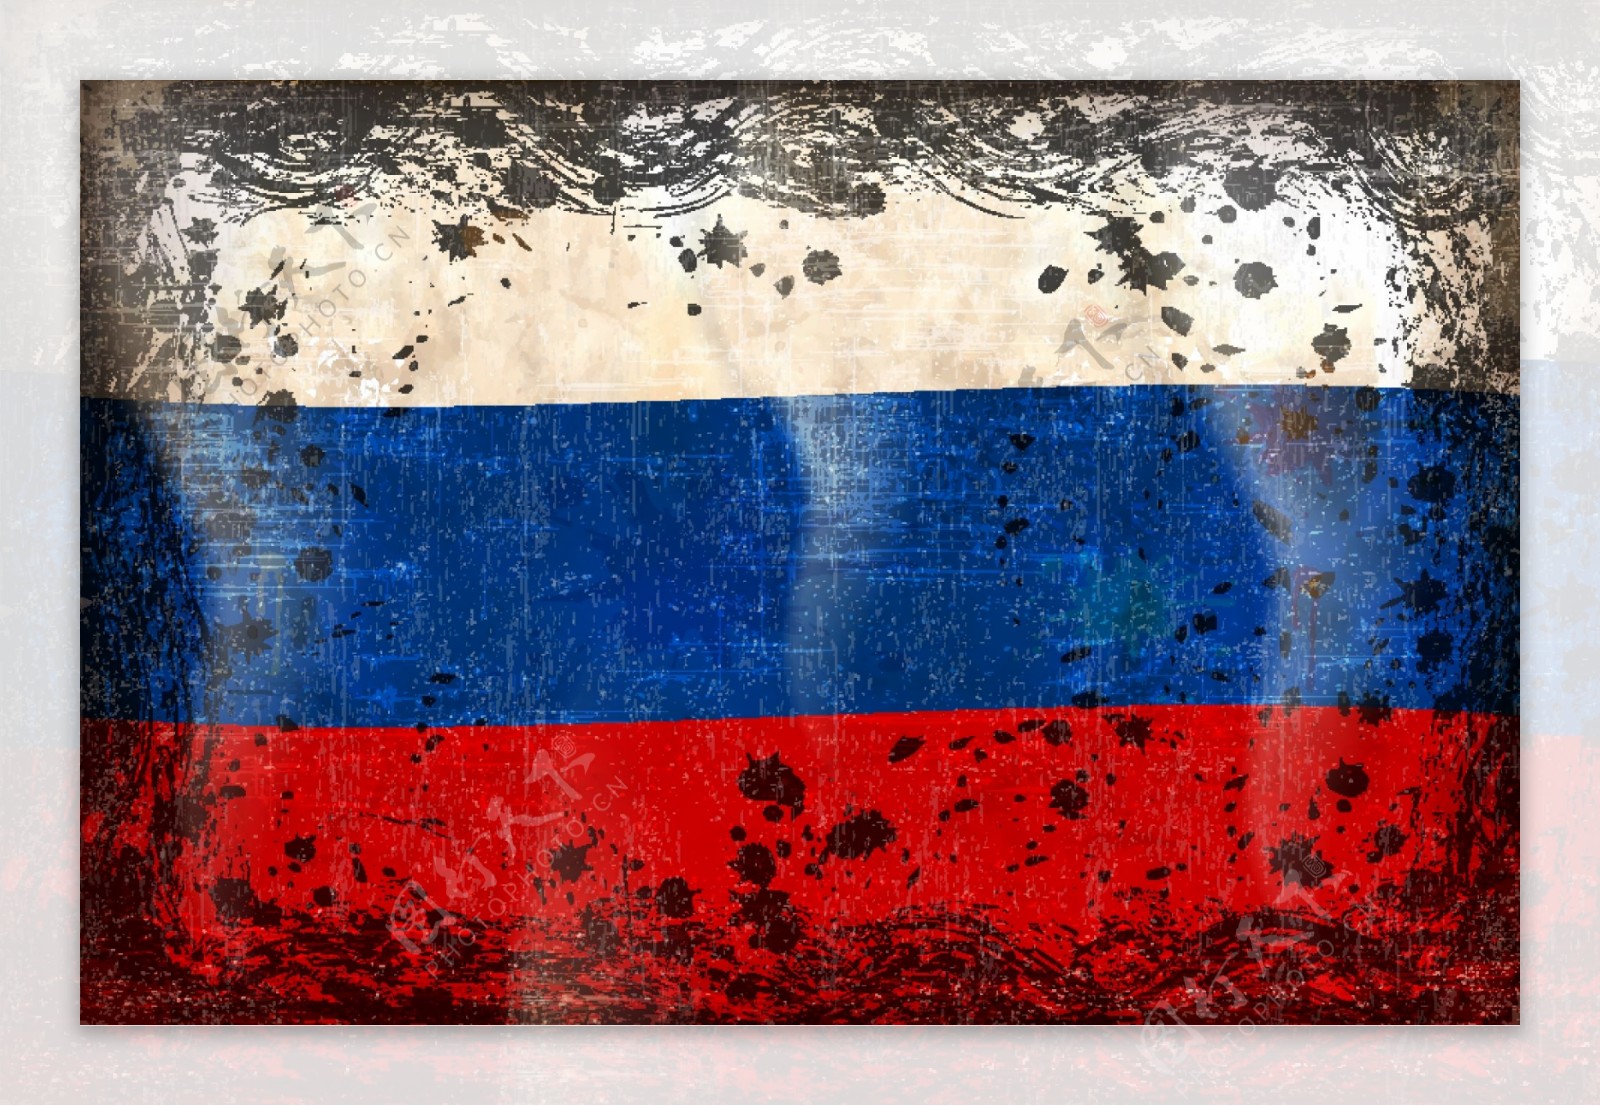 俄罗斯国旗图片